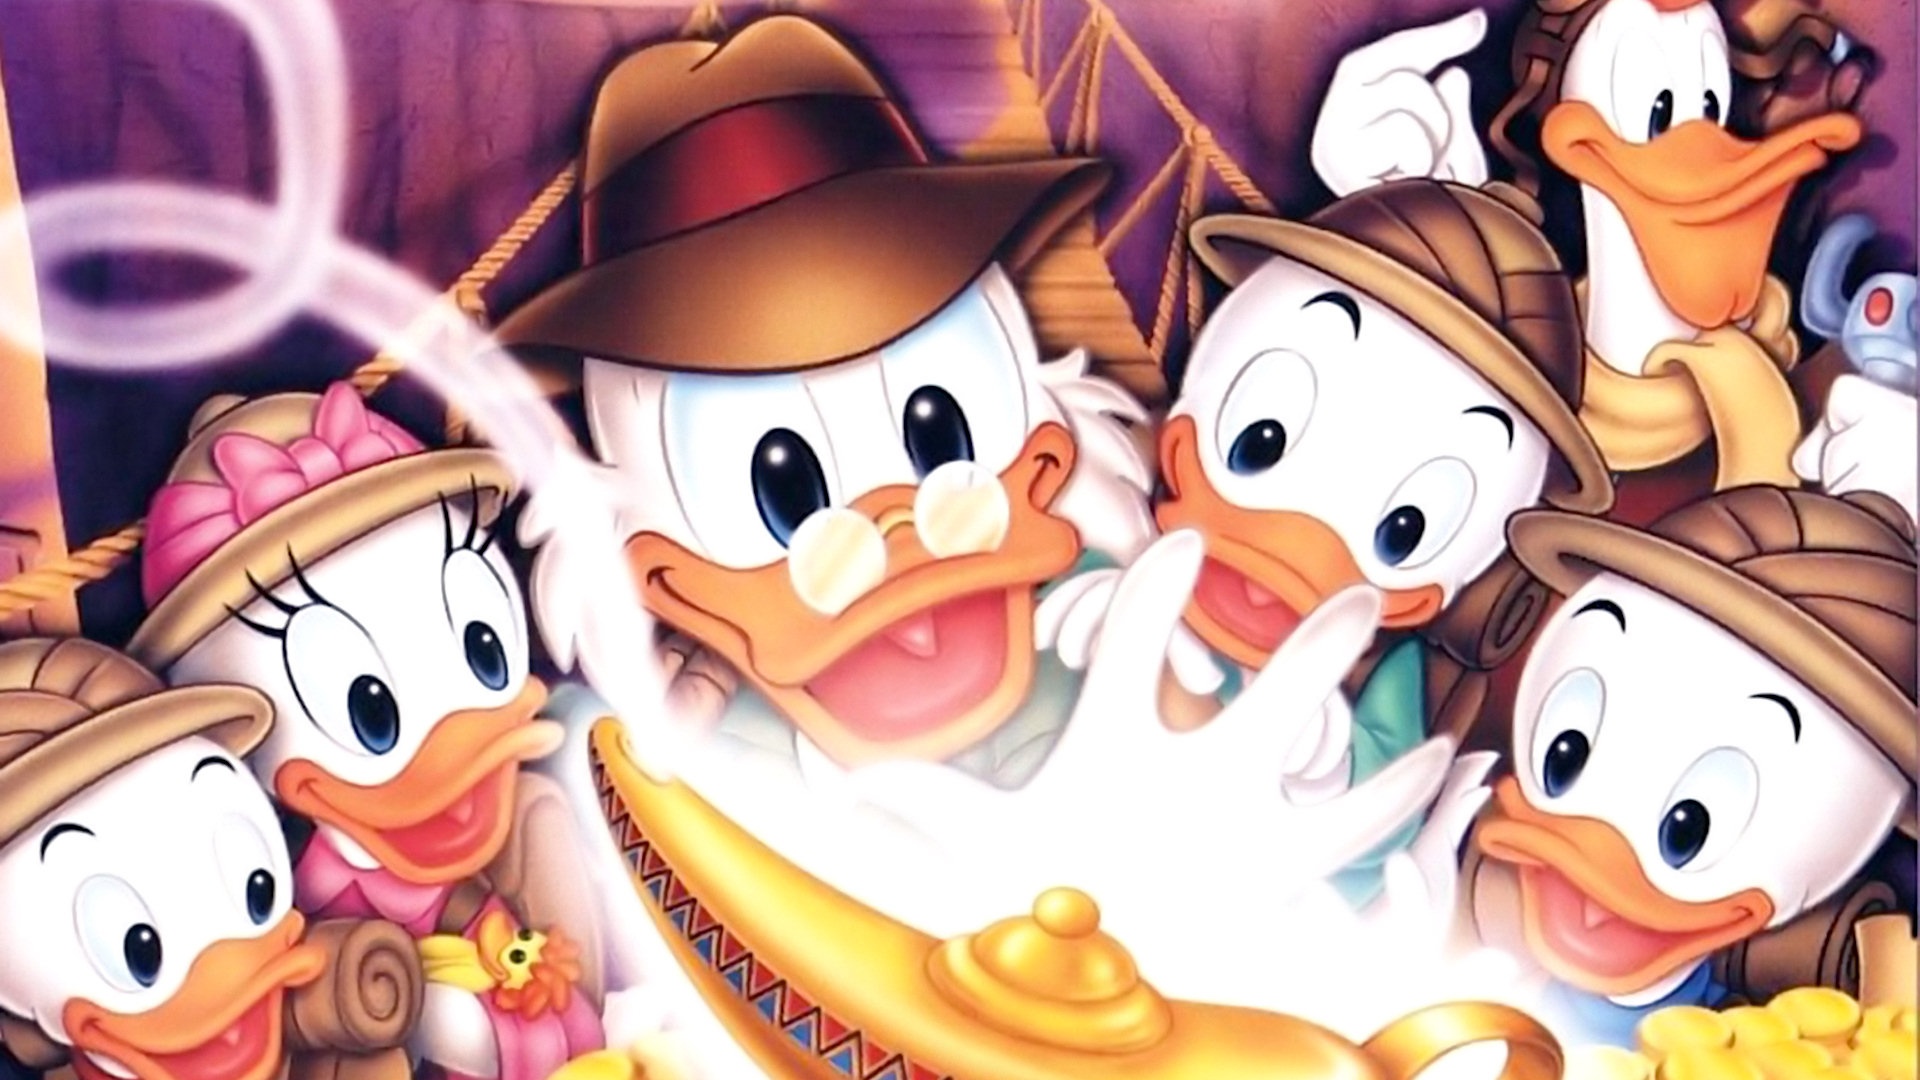 DuckTales Poster - Uncle Scrooge McDuck Wallpaper (36806867) - Fanpop